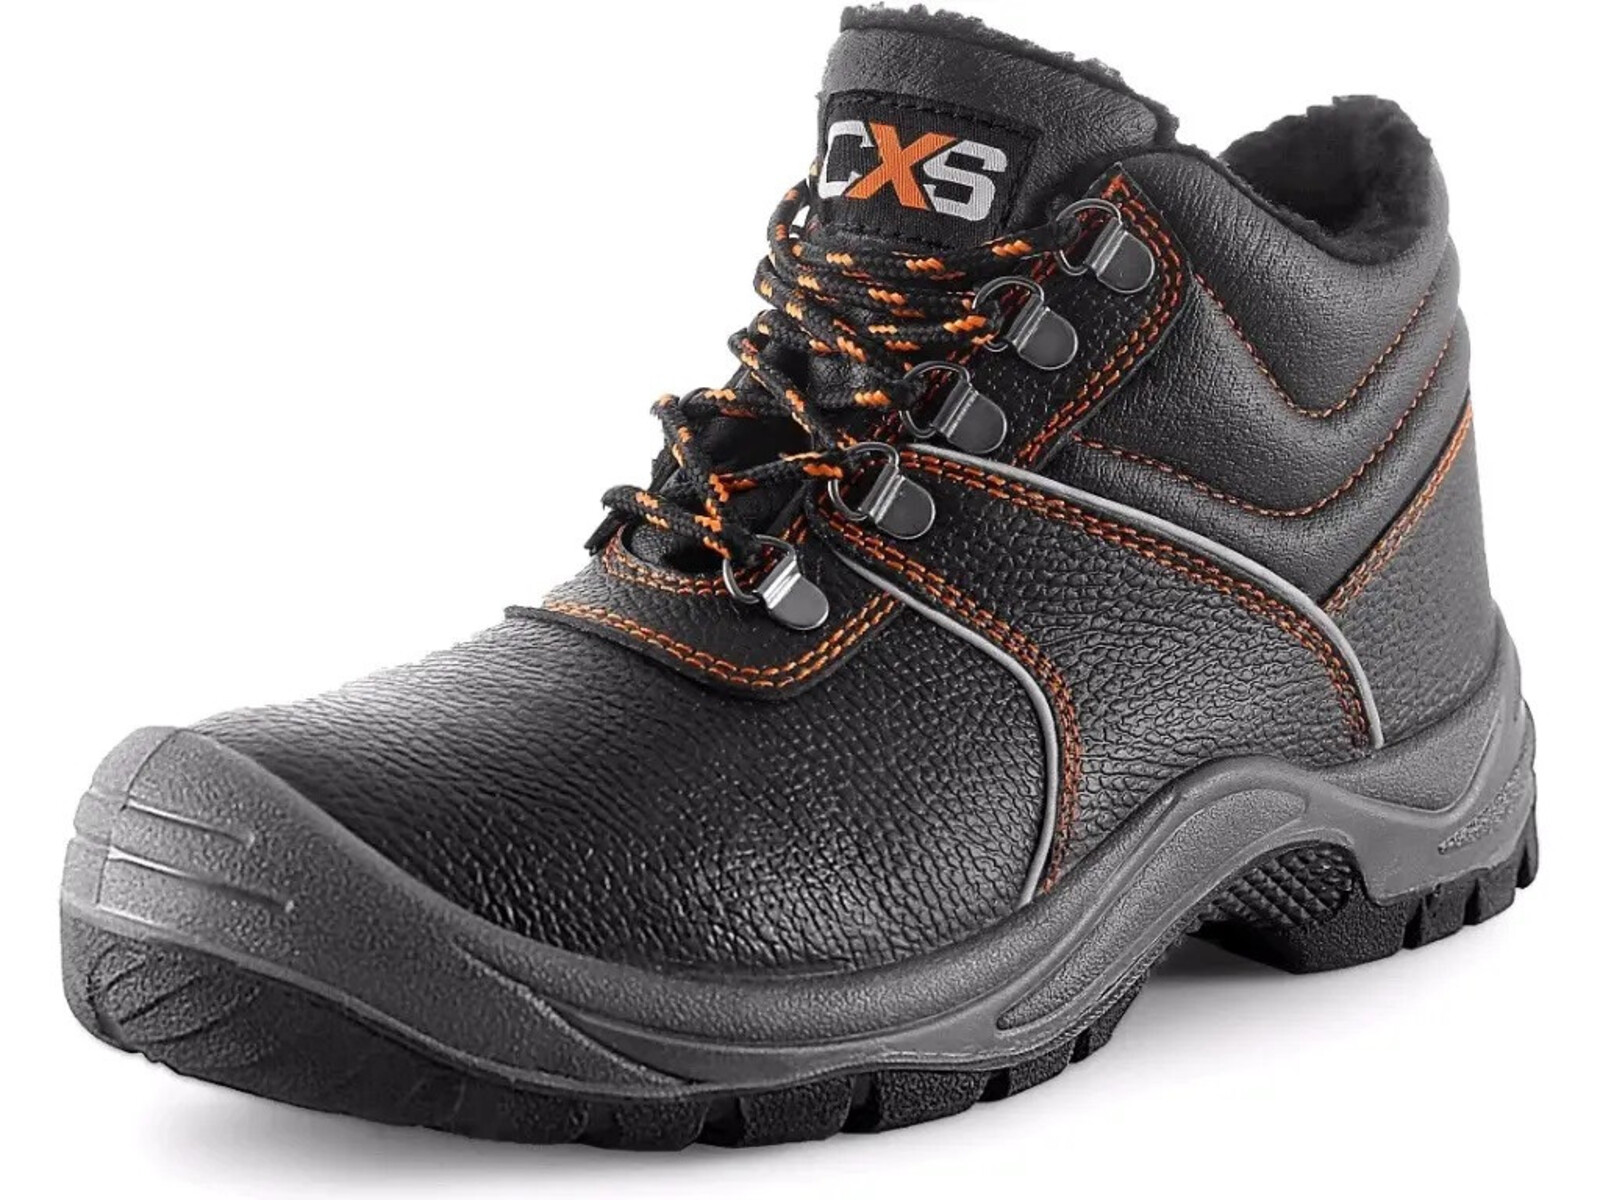 Zimná pracovná členková obuv CXS Stone Apatit Winter O2 FO SRC - veľkosť: 46, farba: čierna/oranžová